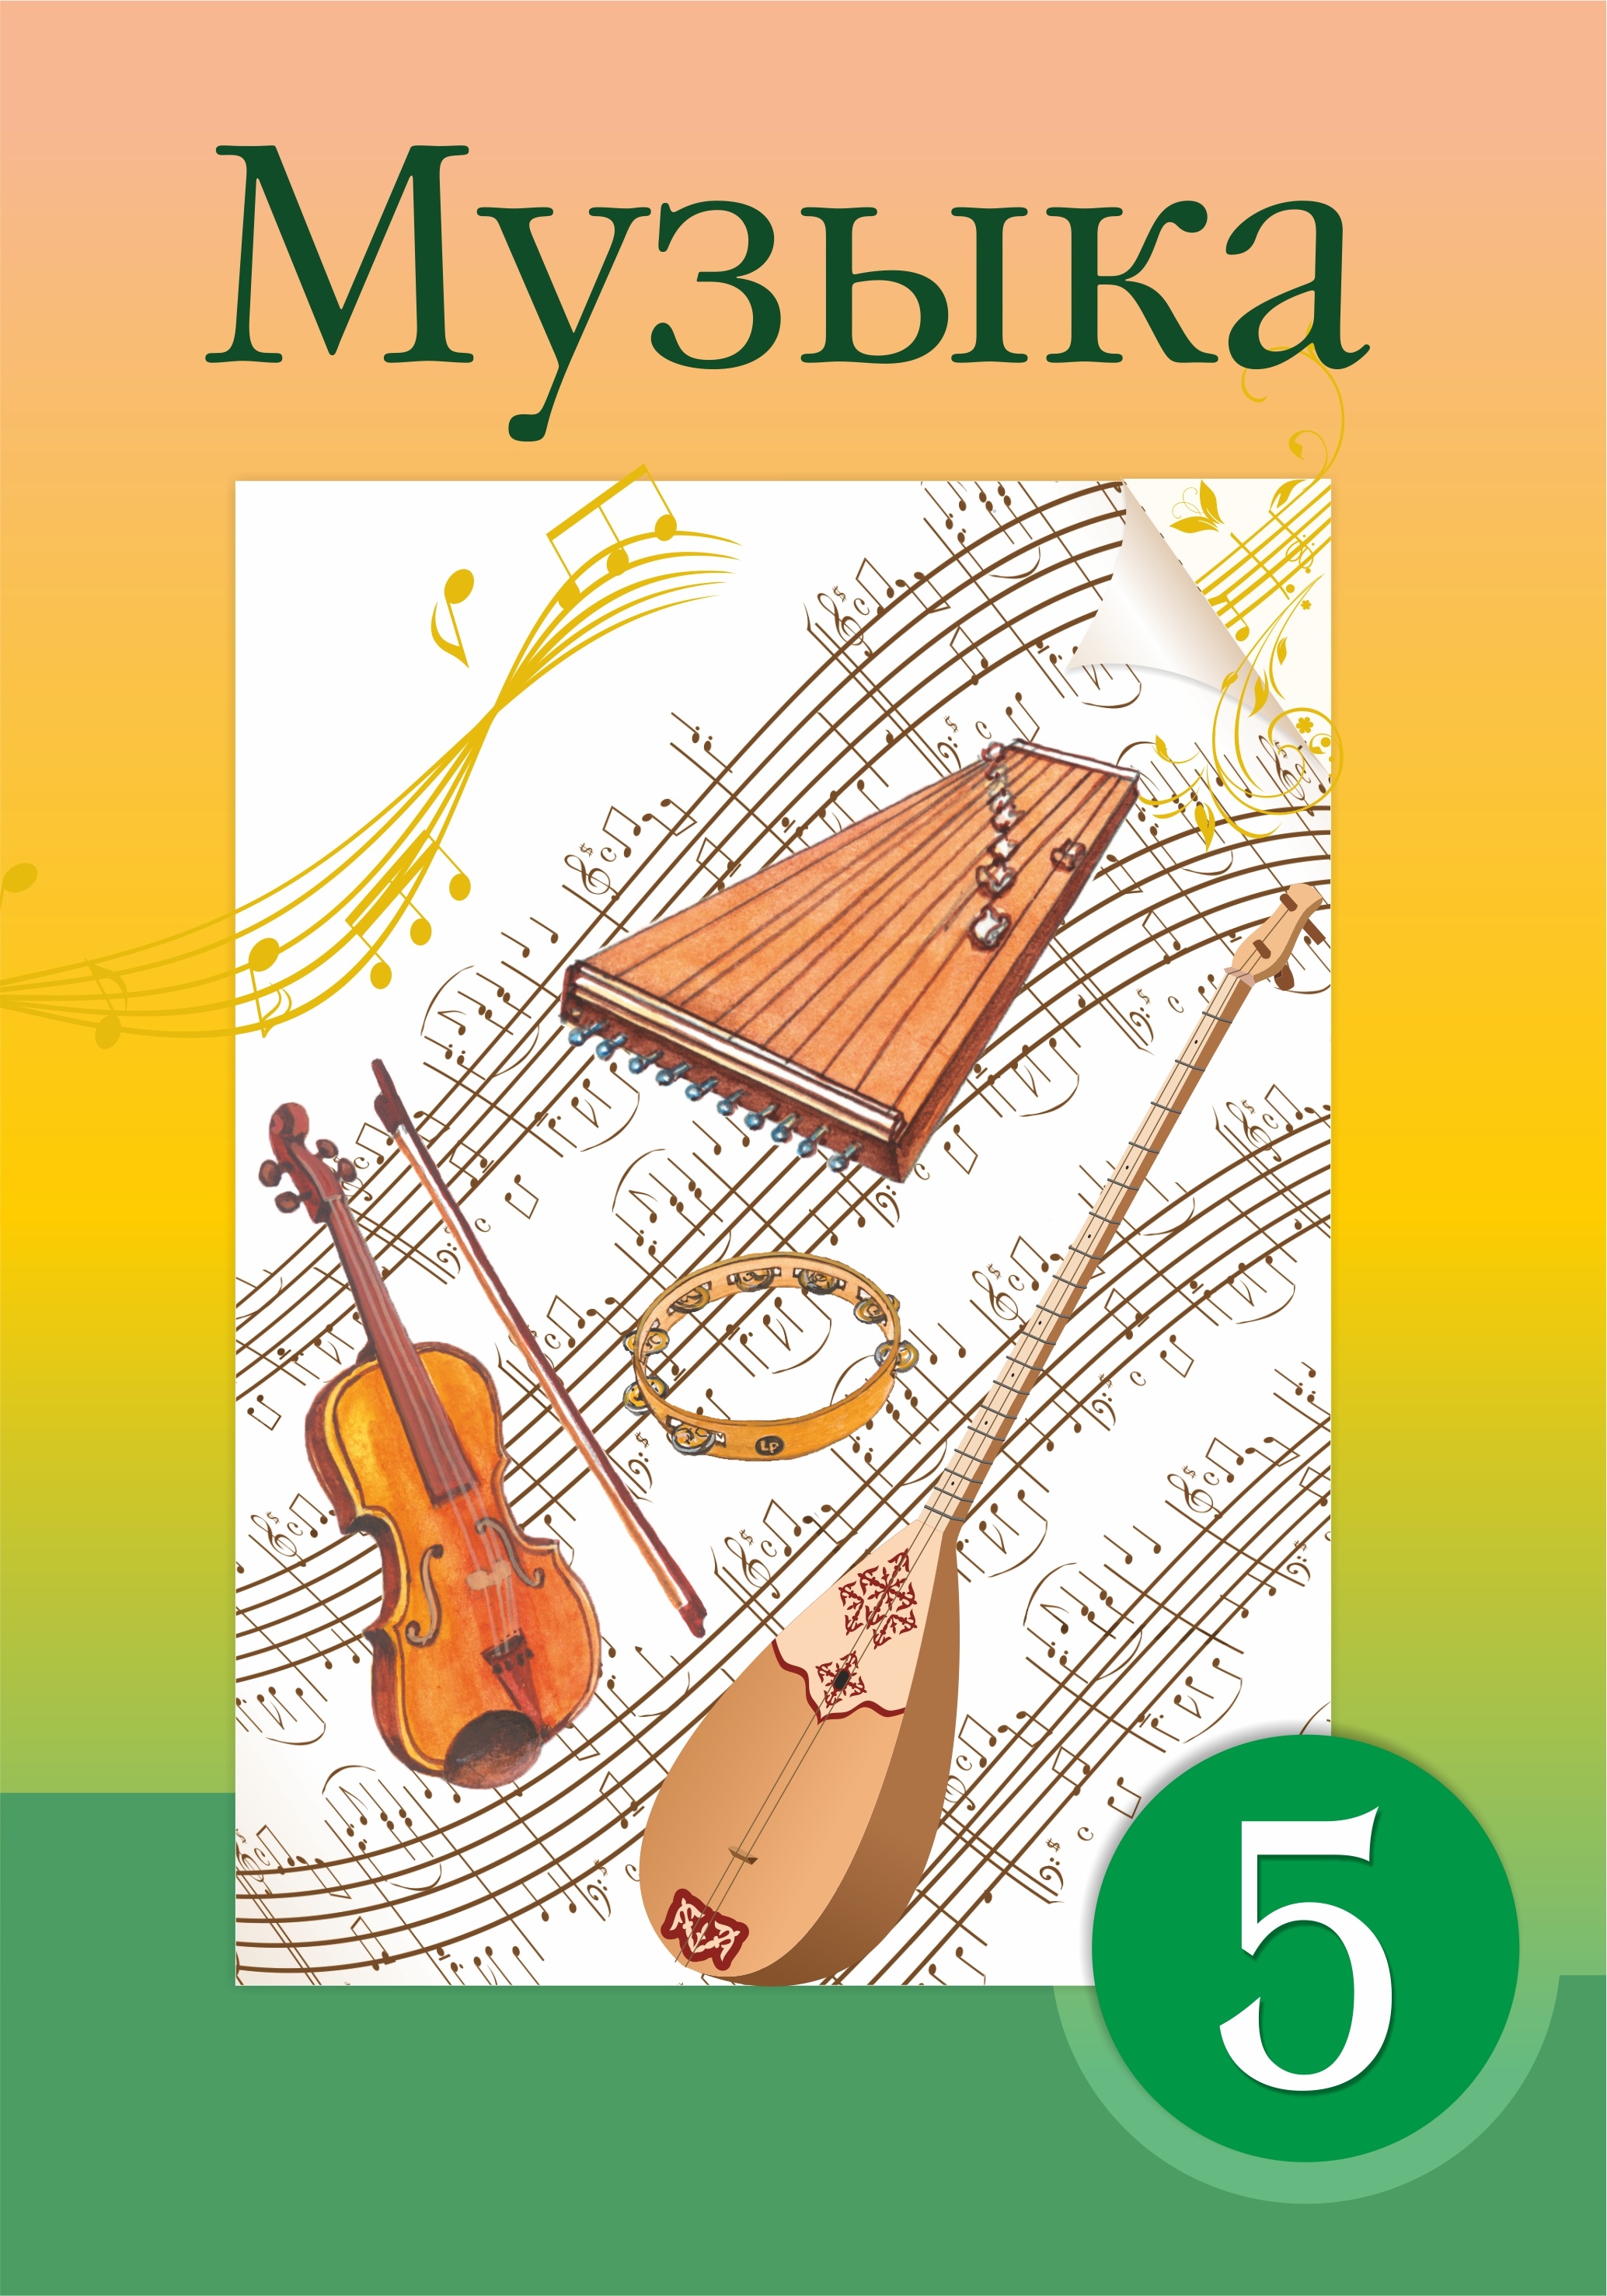 Уроки музыки 5 кл. Учебник по Музыке. Музыка. 5 Класс. Учебник. Музыкальная книга по Музыке. Учебник по Музыке 4 класс обложка.